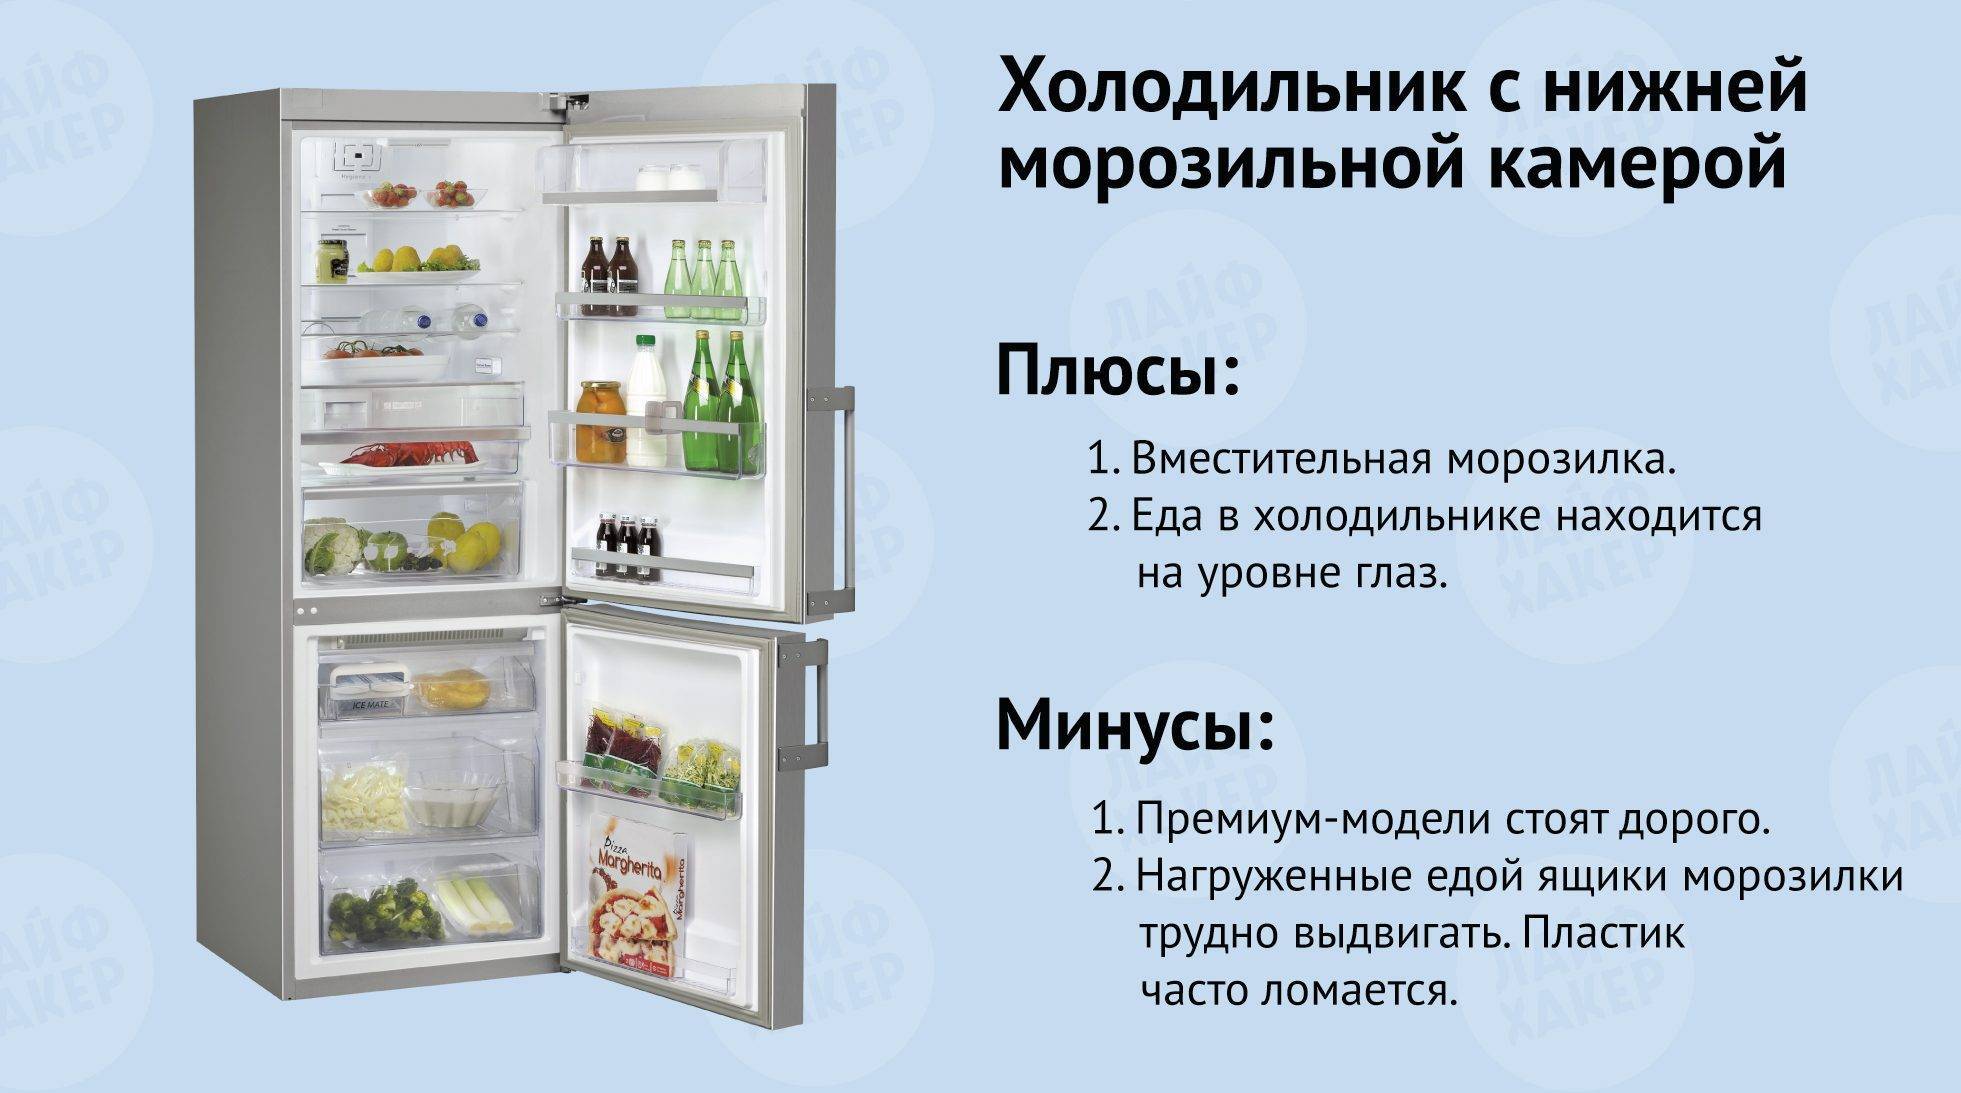 Температура в холодильнике: какая должна быть, оптимальная, норма, сколько градусов для хранения продуктов в морозилке по санпин